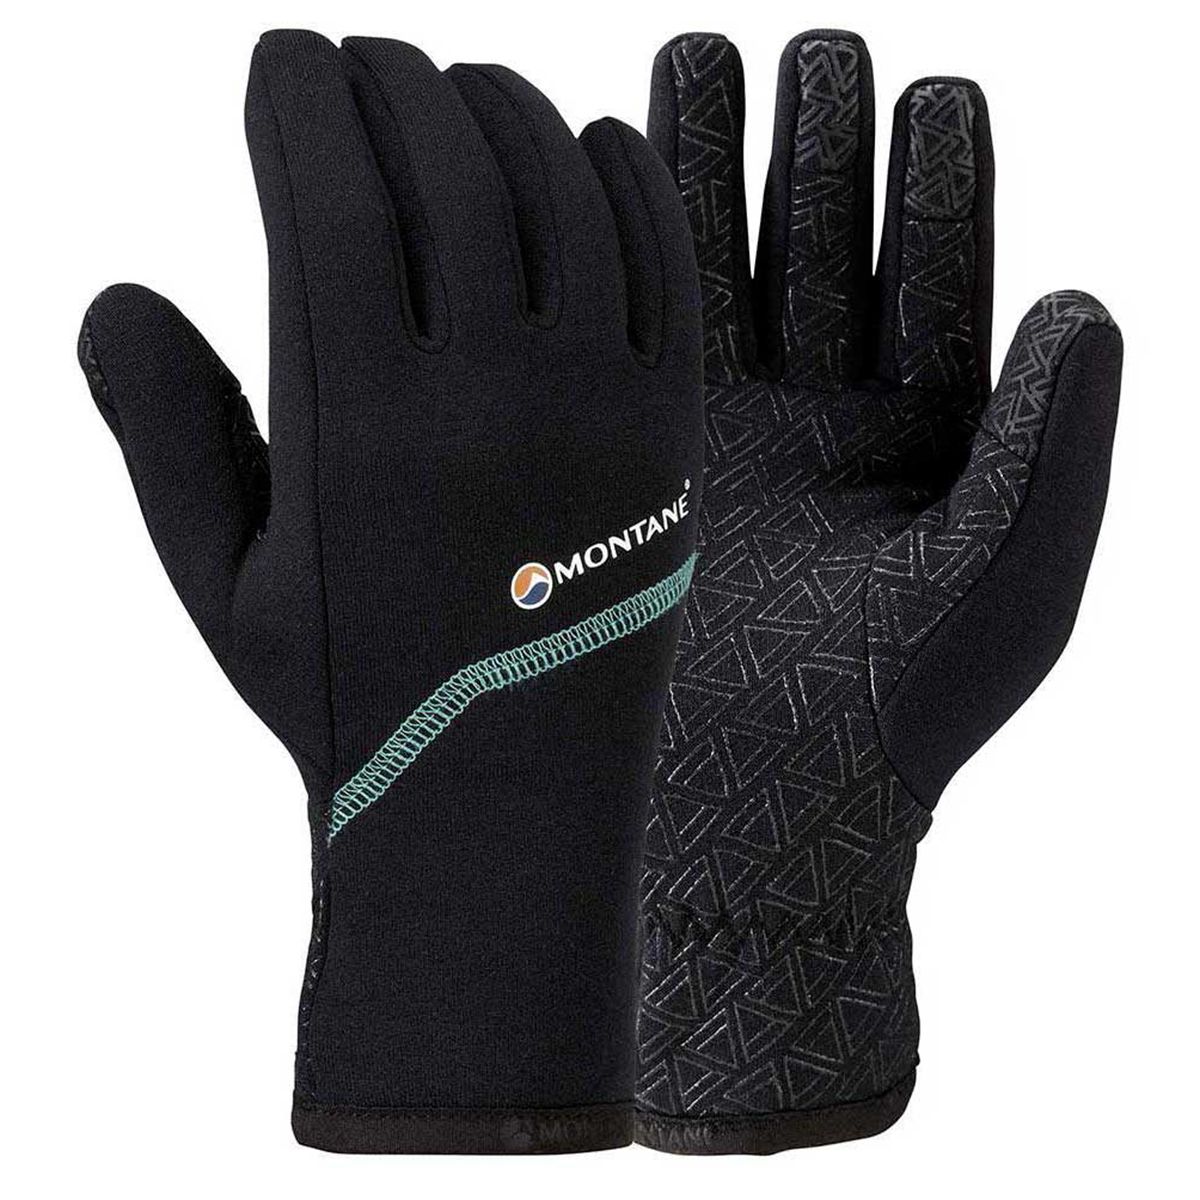 Powerstretch Pro Grippy Glove - Men